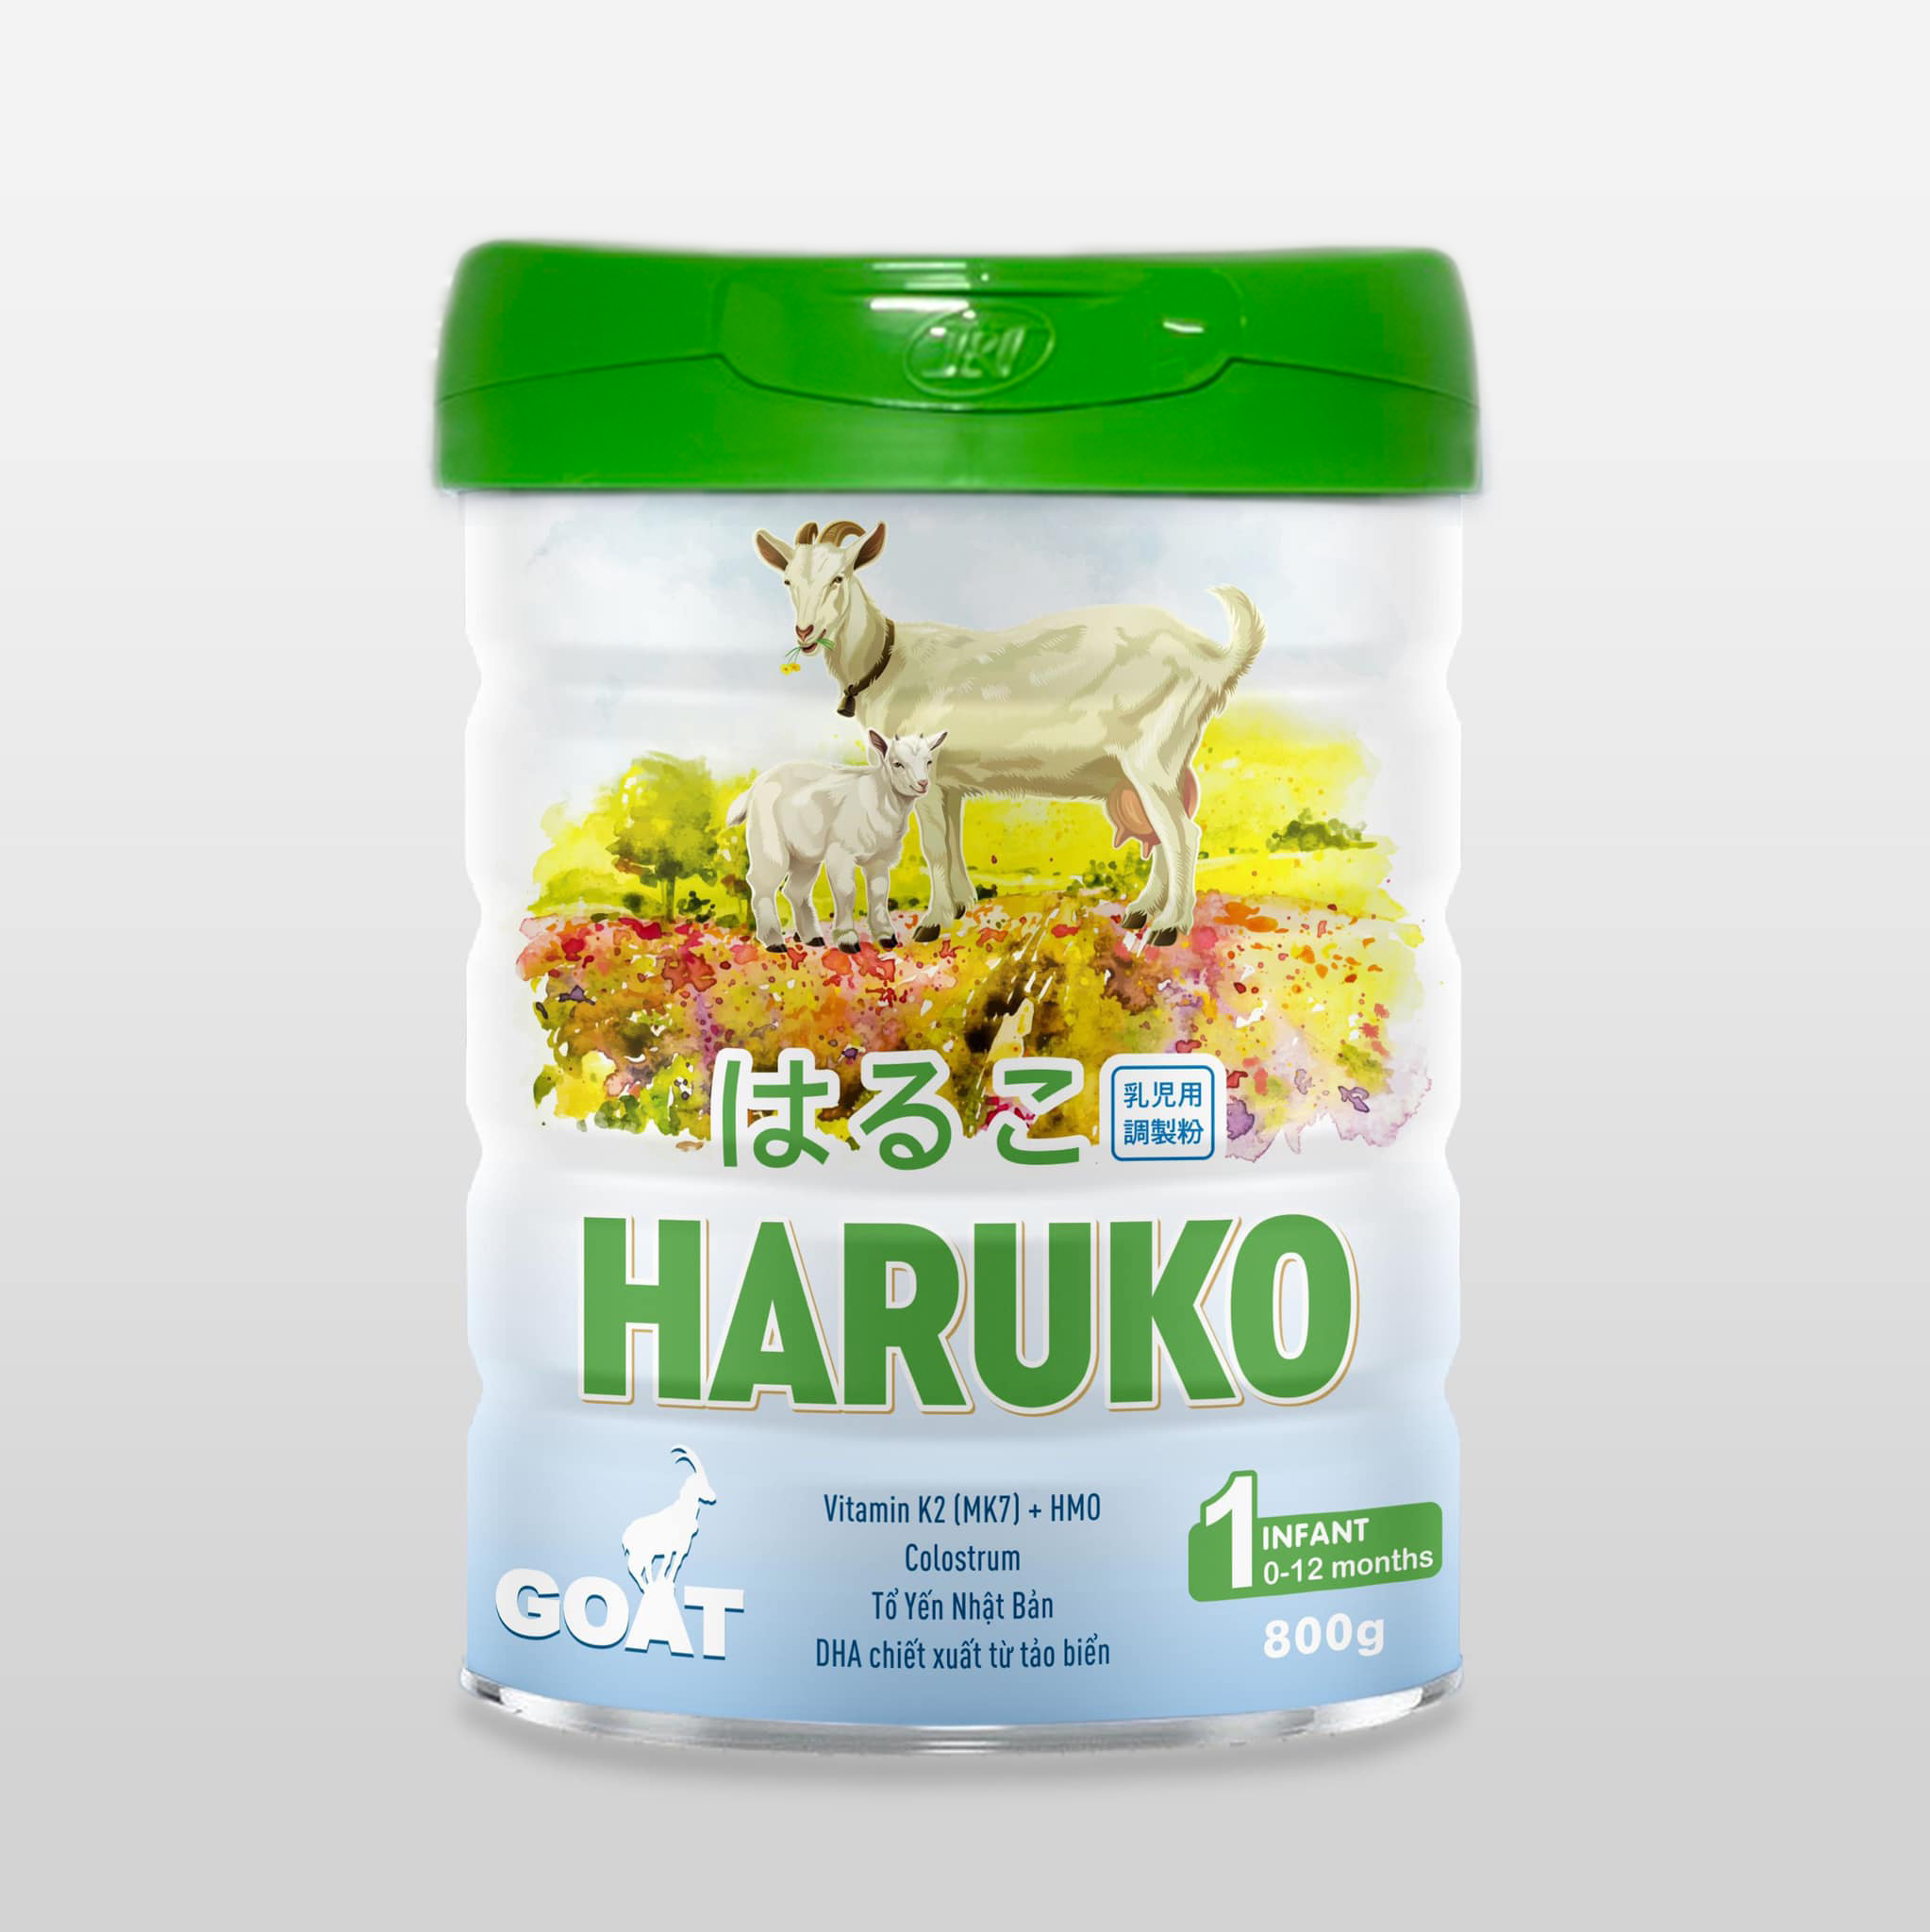 Haruko Goat 1